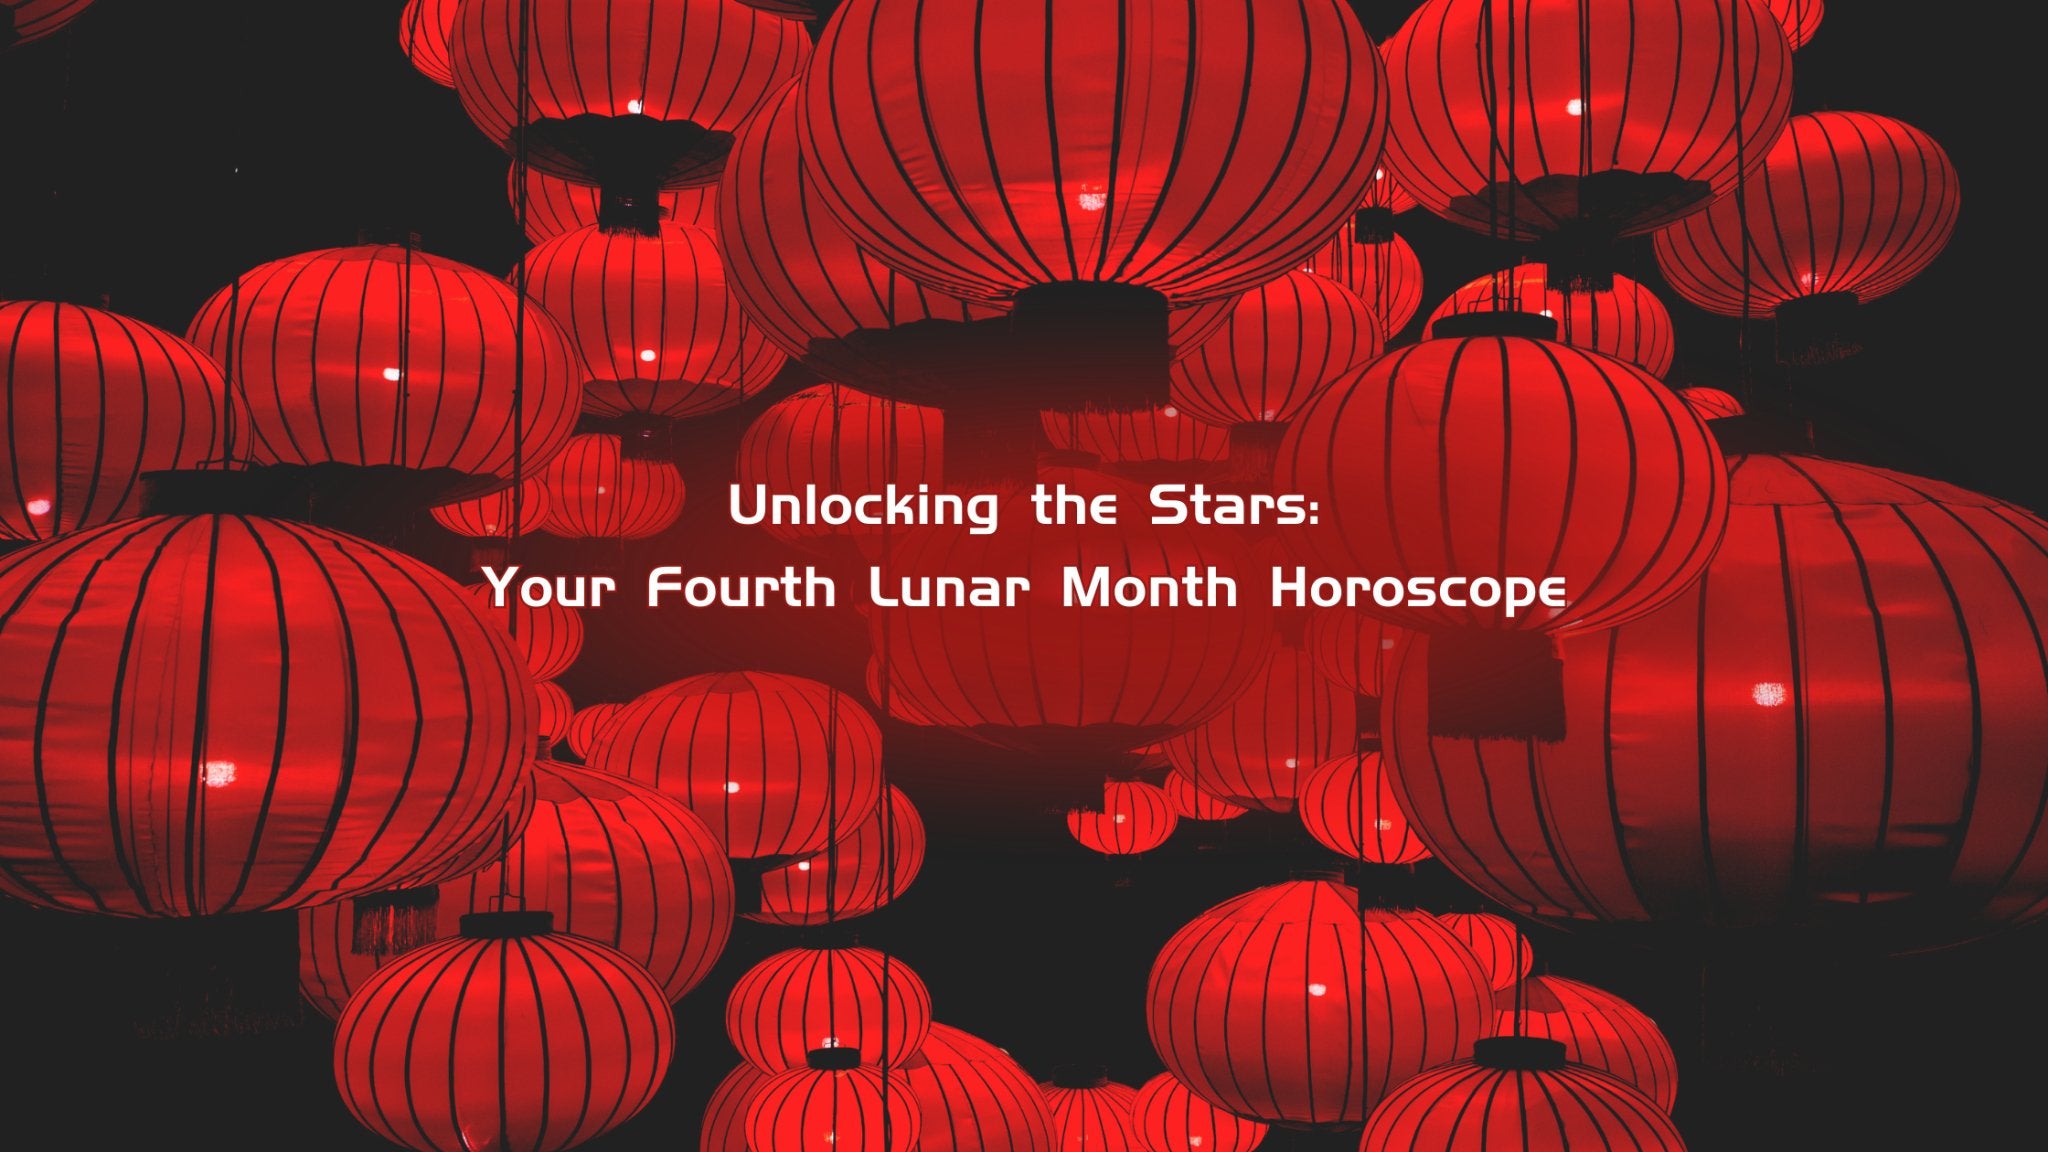 Desbloqueando as estrelas: seu horóscopo do quarto mês lunar - Buddha Power Store